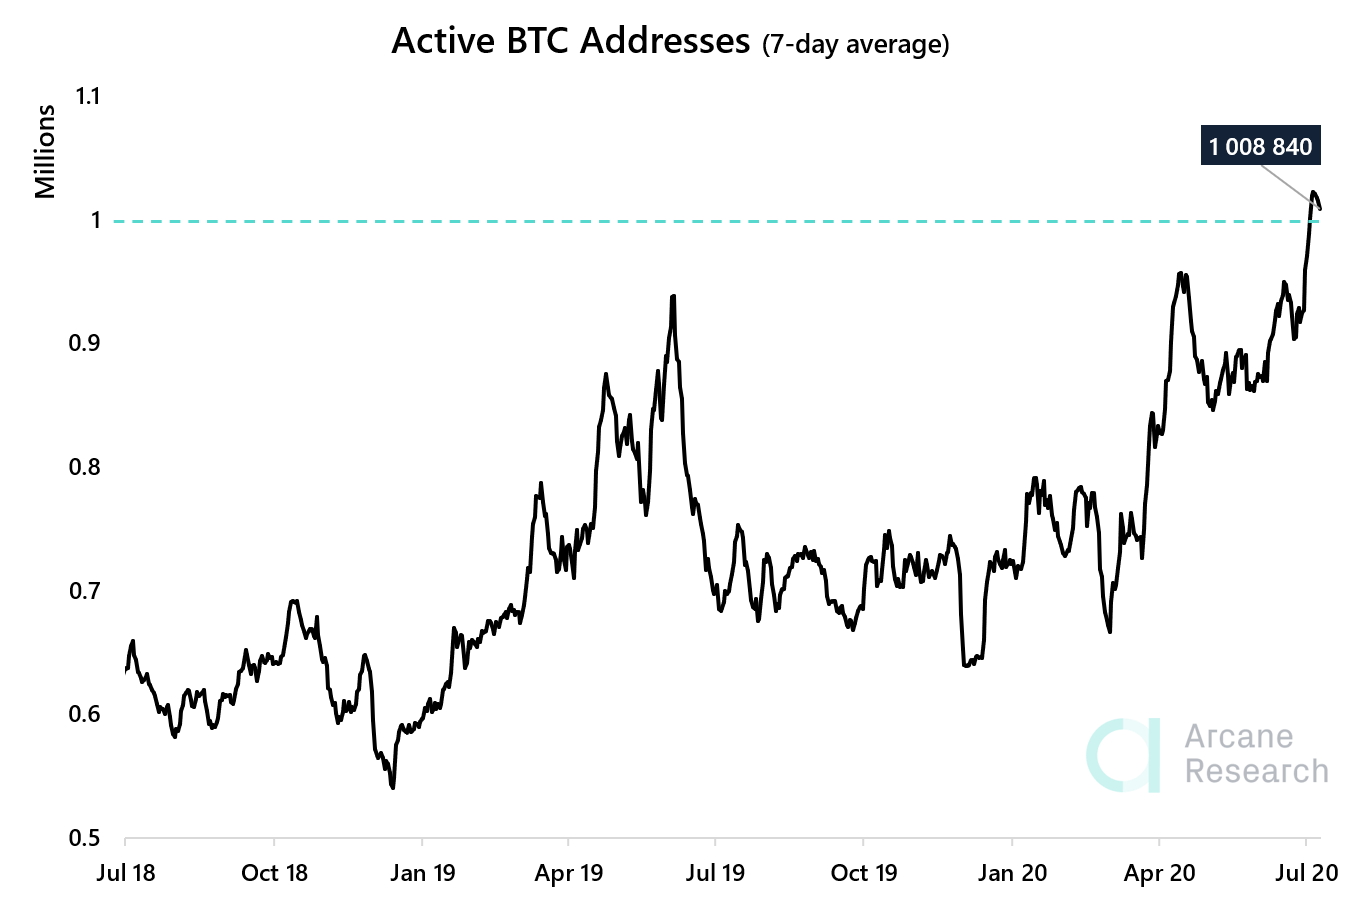 Aantal actieve Bitcoin adressen bereikt één miljoen, hoogste in twee jaar